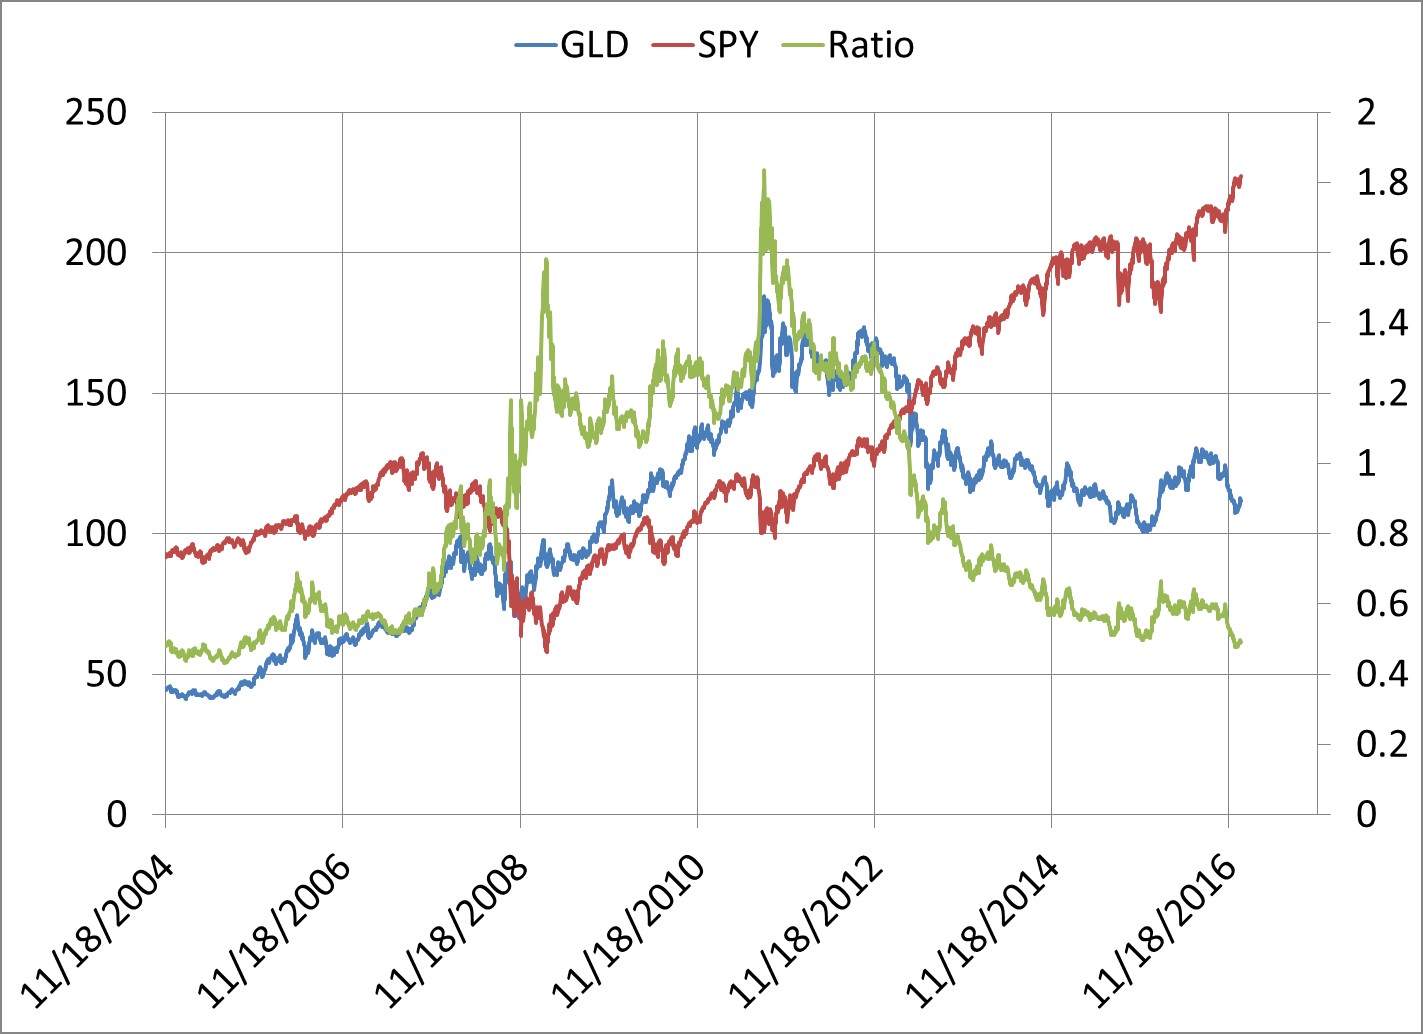 skype stock historical chart